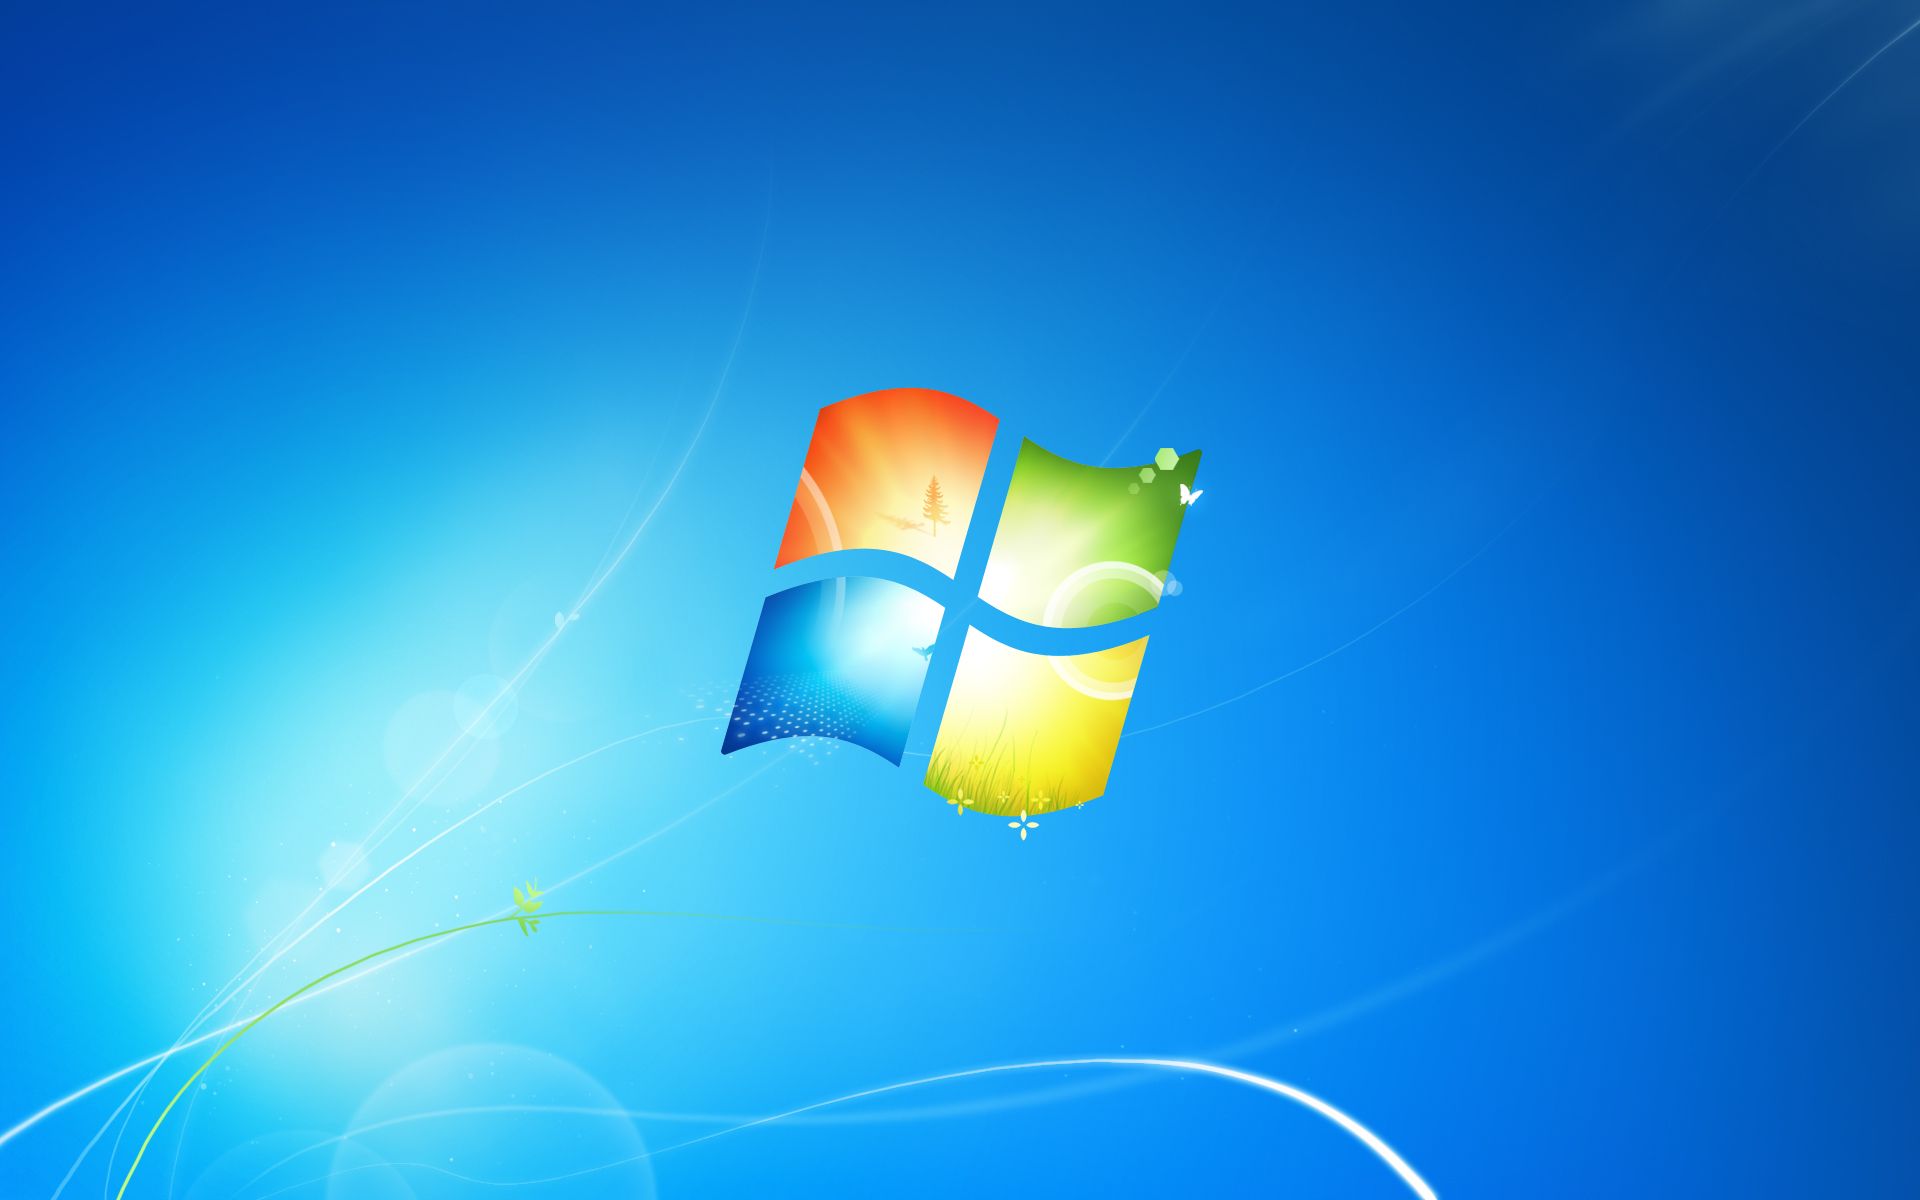 Логотип Windows 7 на синем фоне